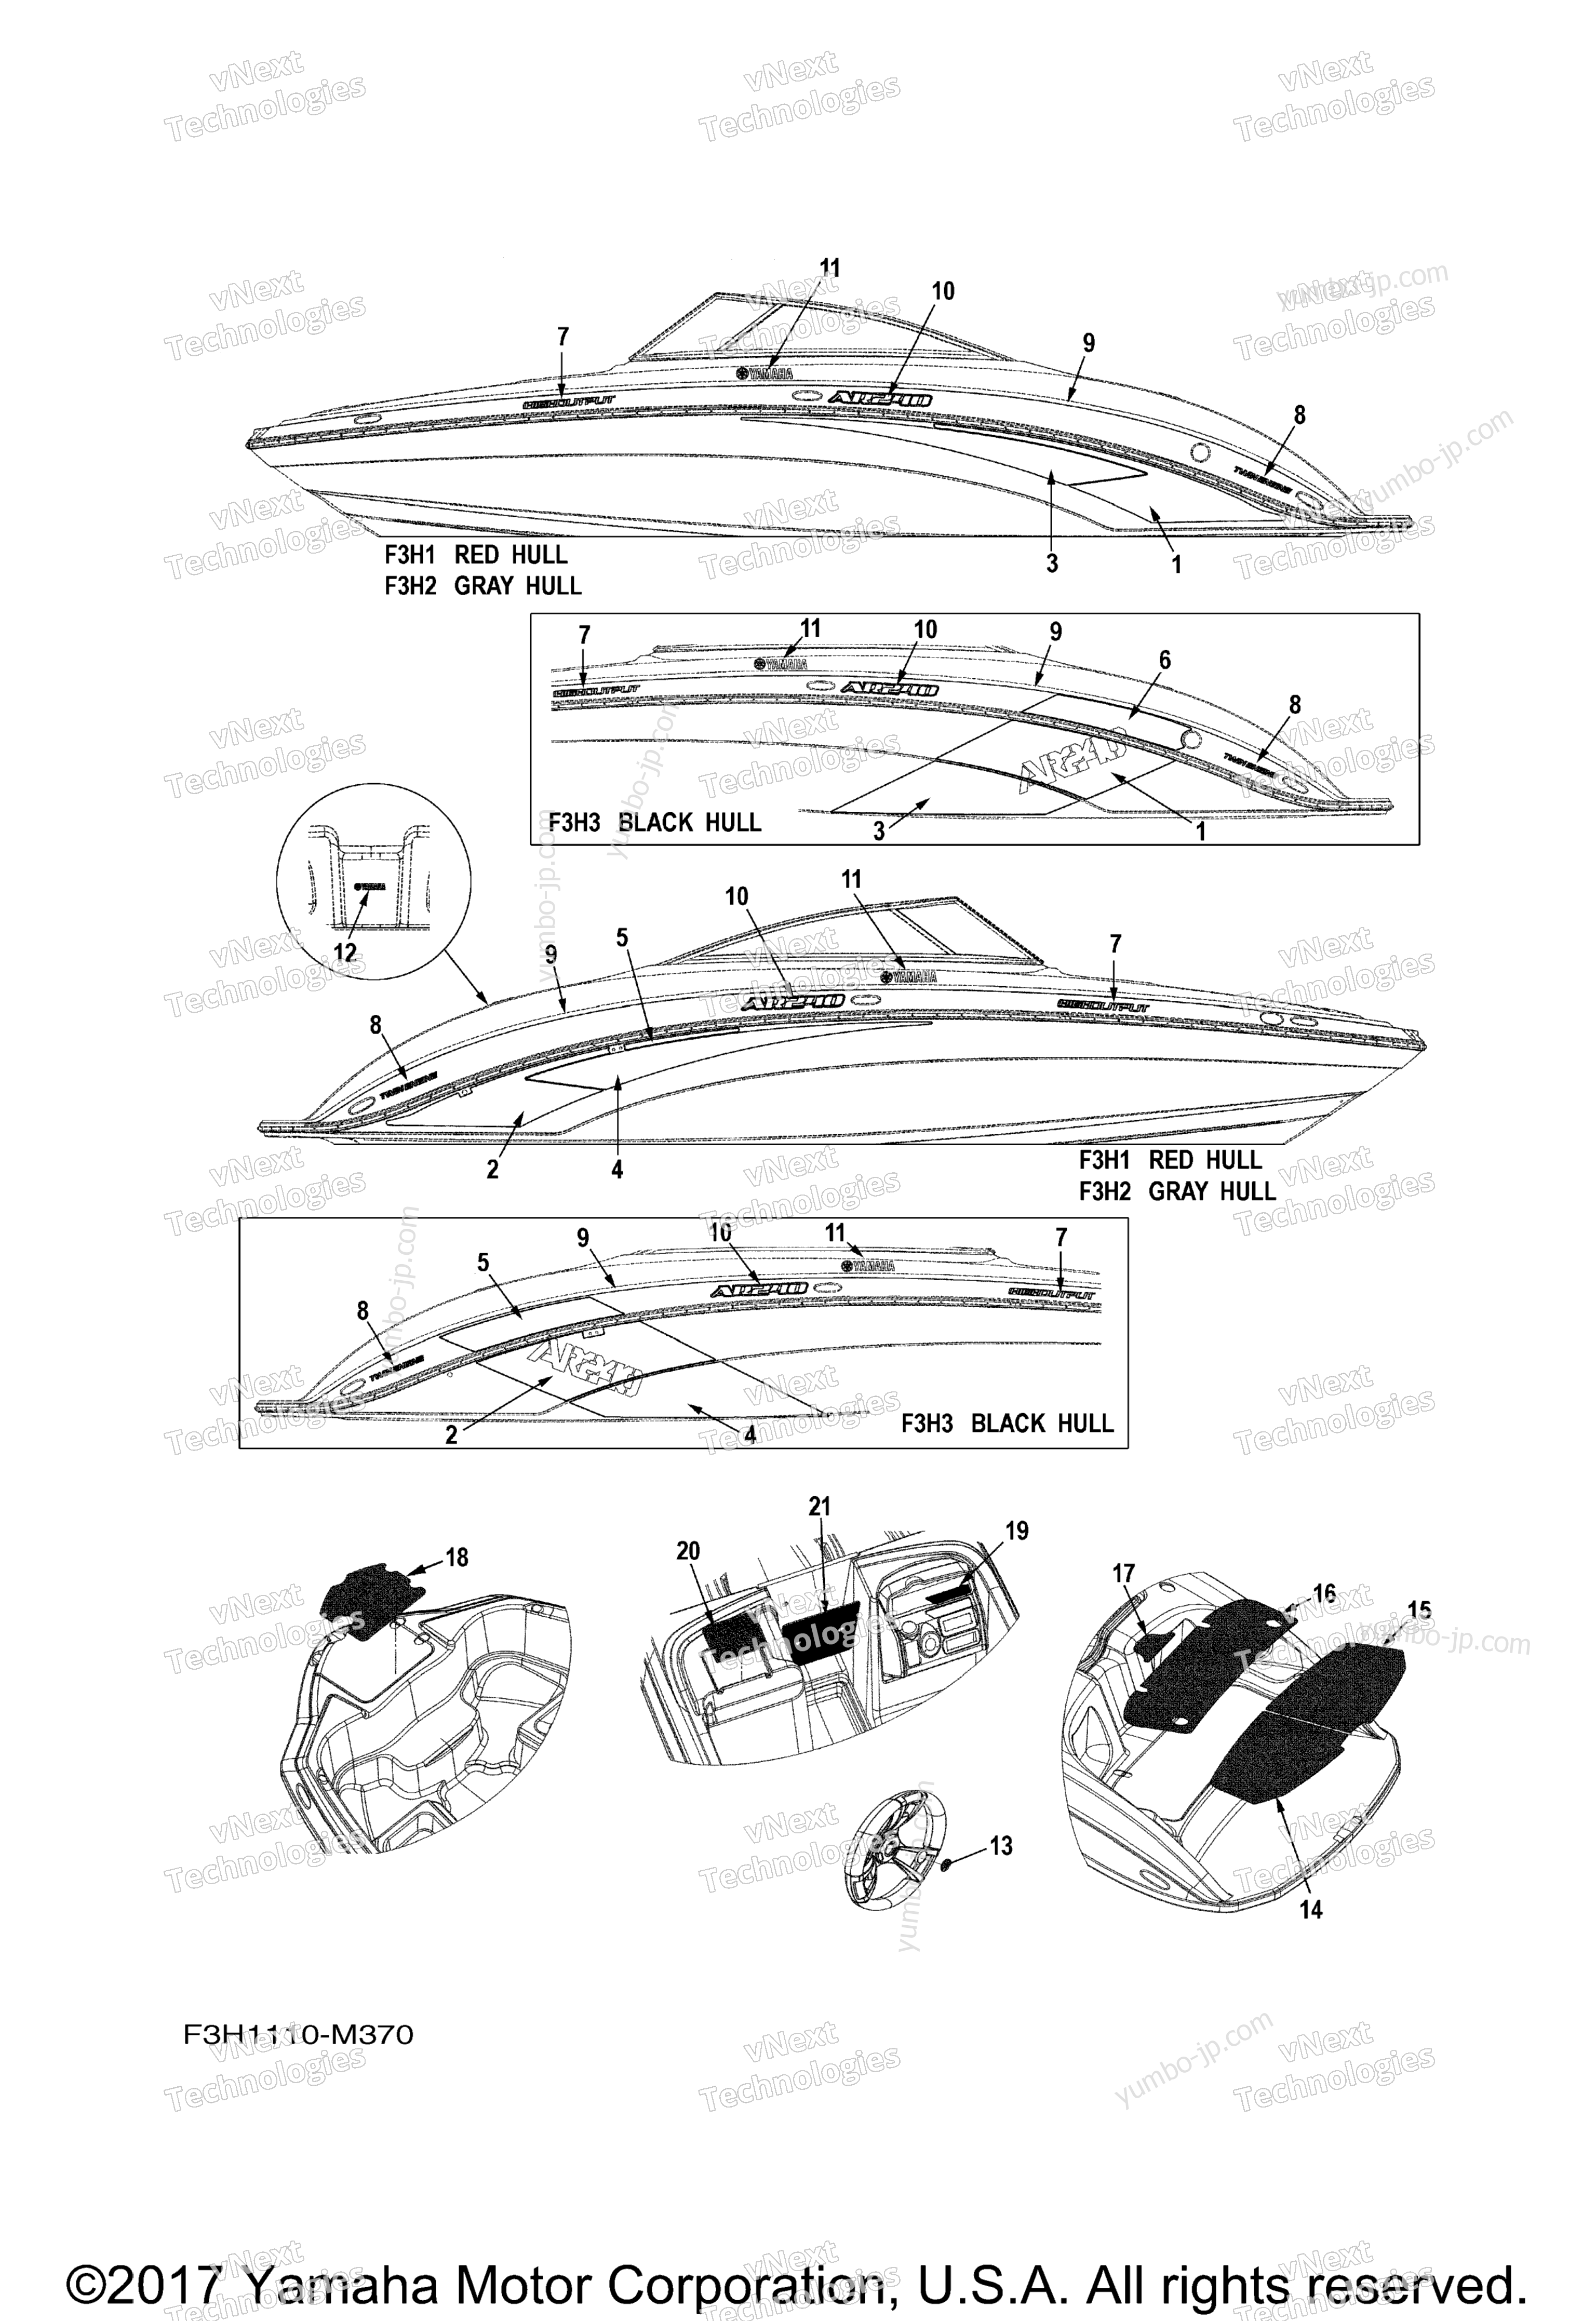 Graphics & Mats для катеров YAMAHA AR240 CALIFORNIA (SXT1800CLM) CA 2013 г.